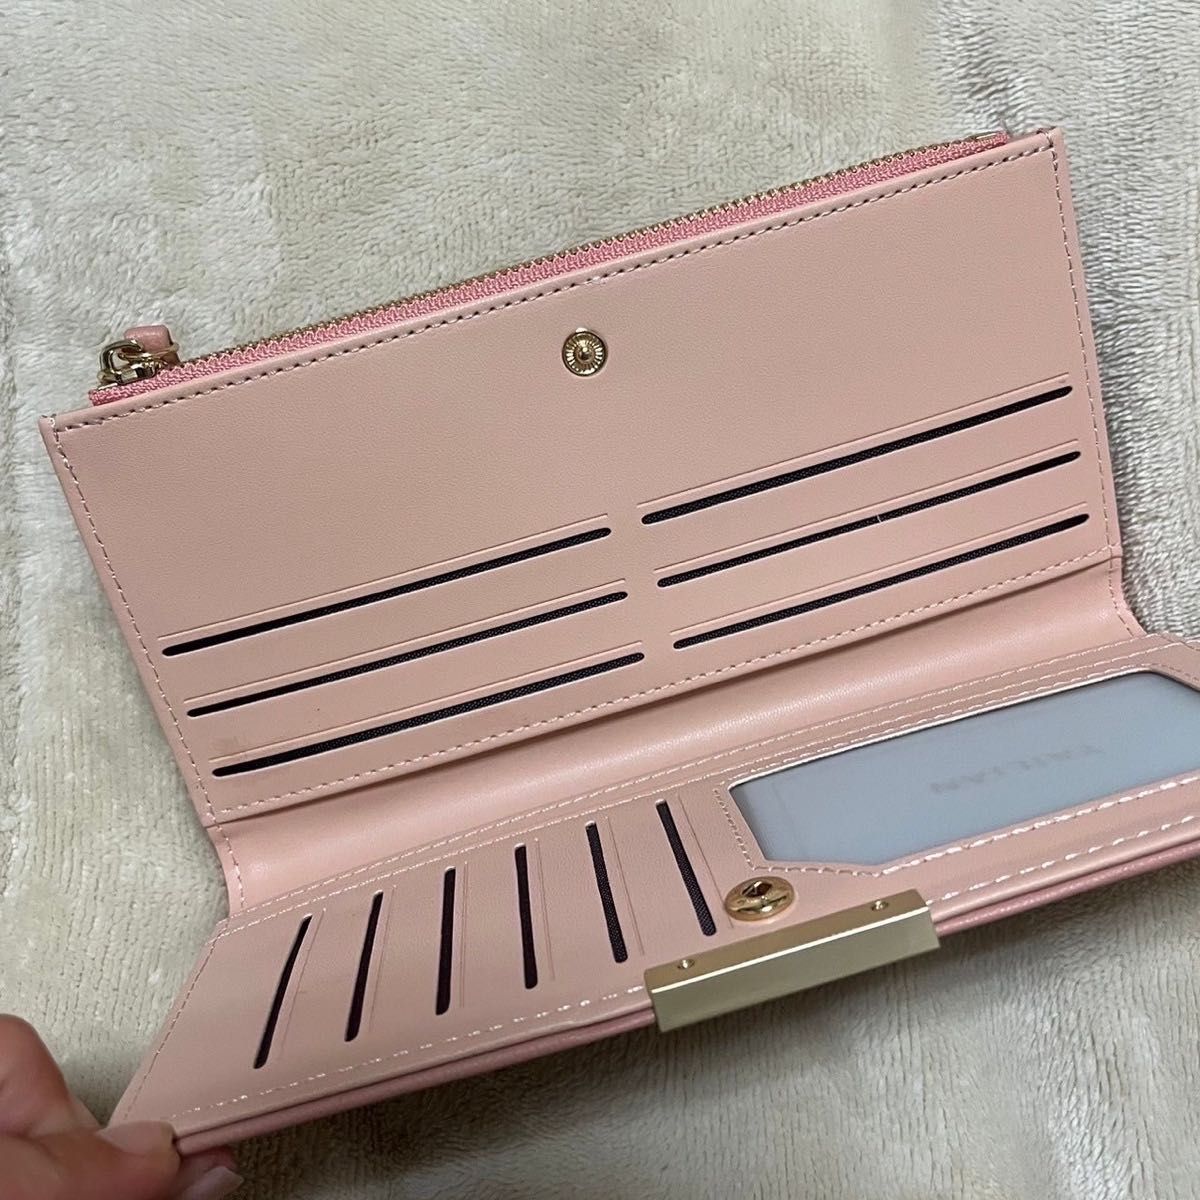 10長財布 スリム ウォレット 薄型 カードケース ポイントカード 収納 ピンク